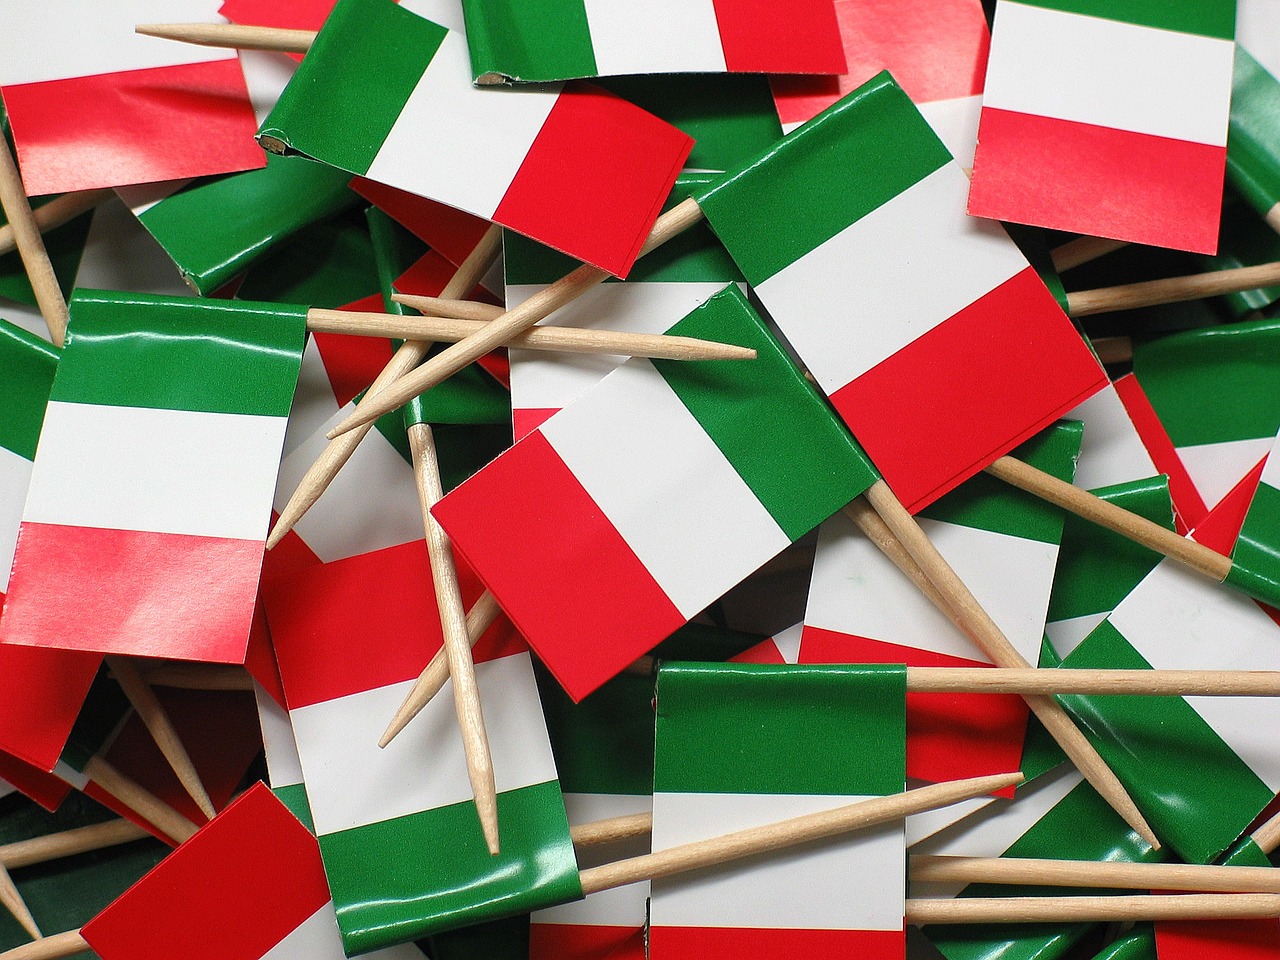 Imagen principal de la noticia 'Aprender italiano: 5 motivos por los que merece la pena'